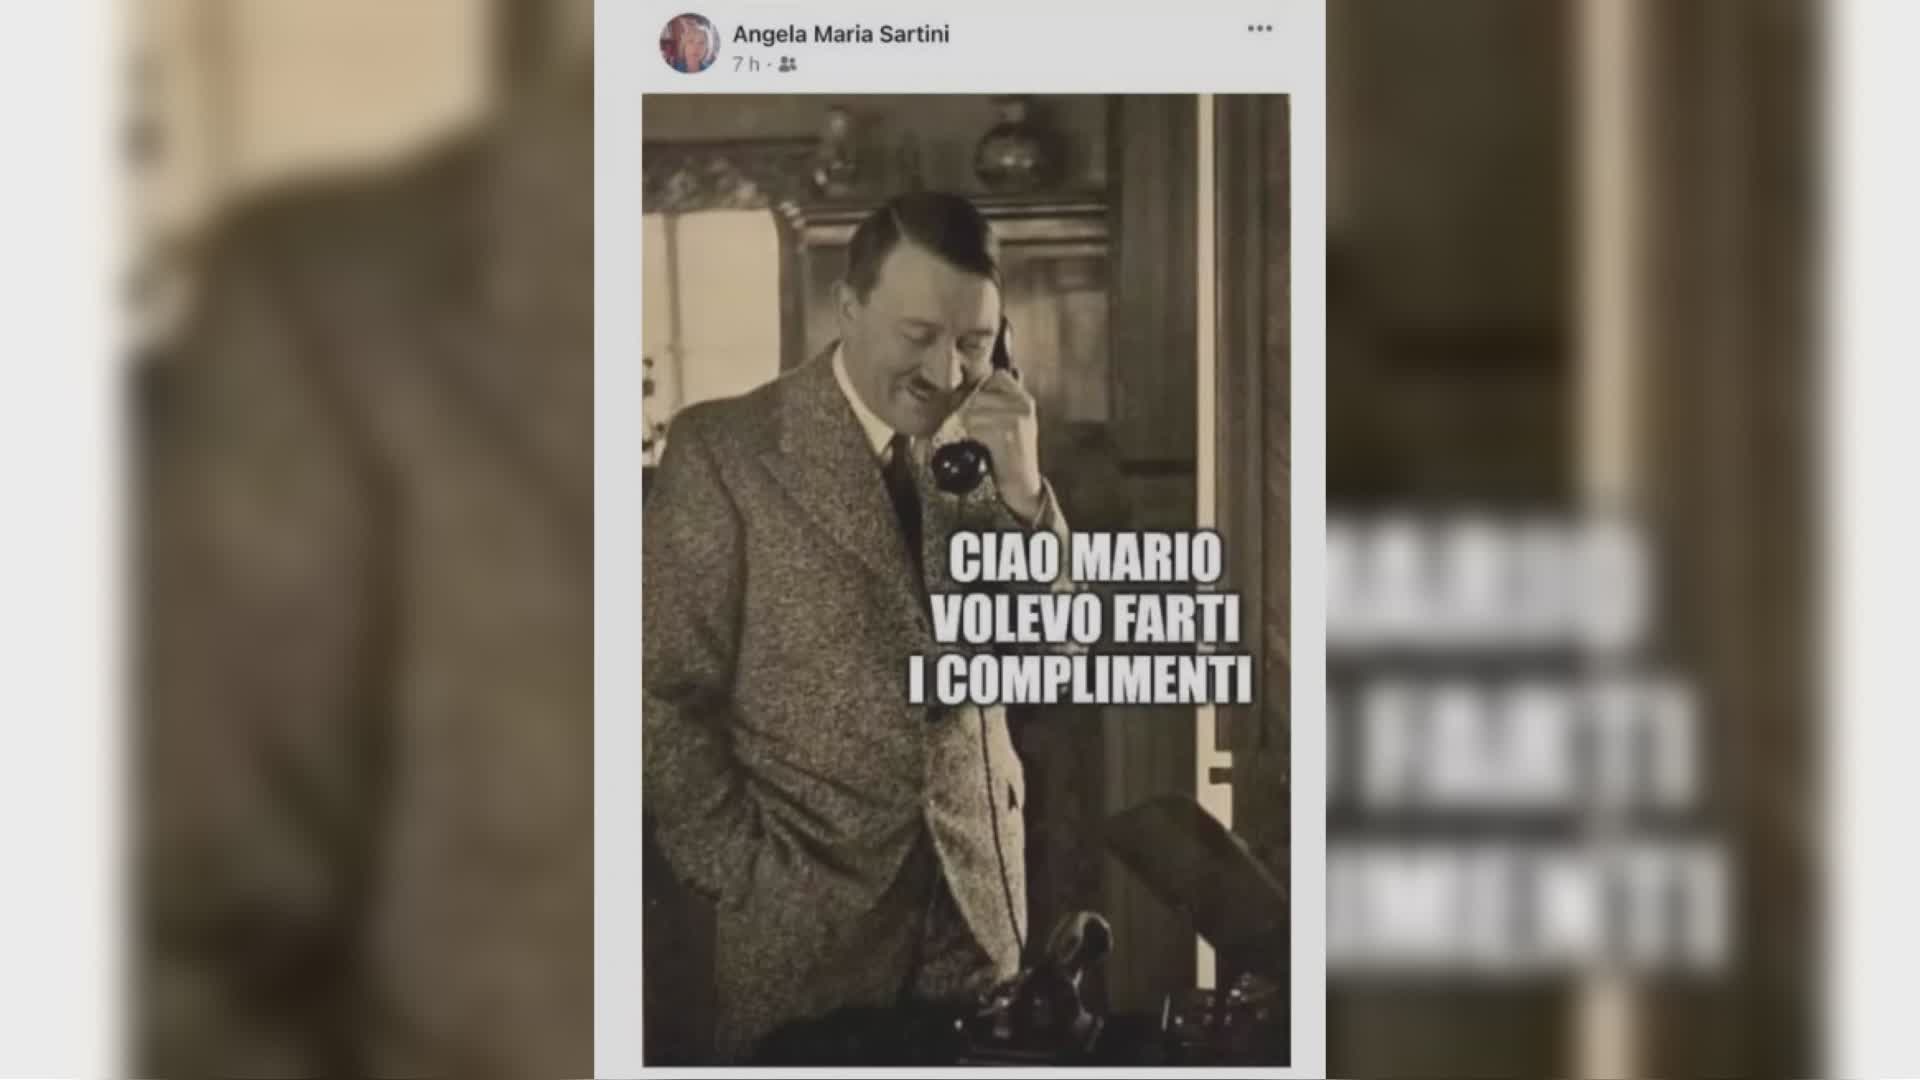 Critica Draghi con una foto di Hitler. Sospesa assessore Sartini